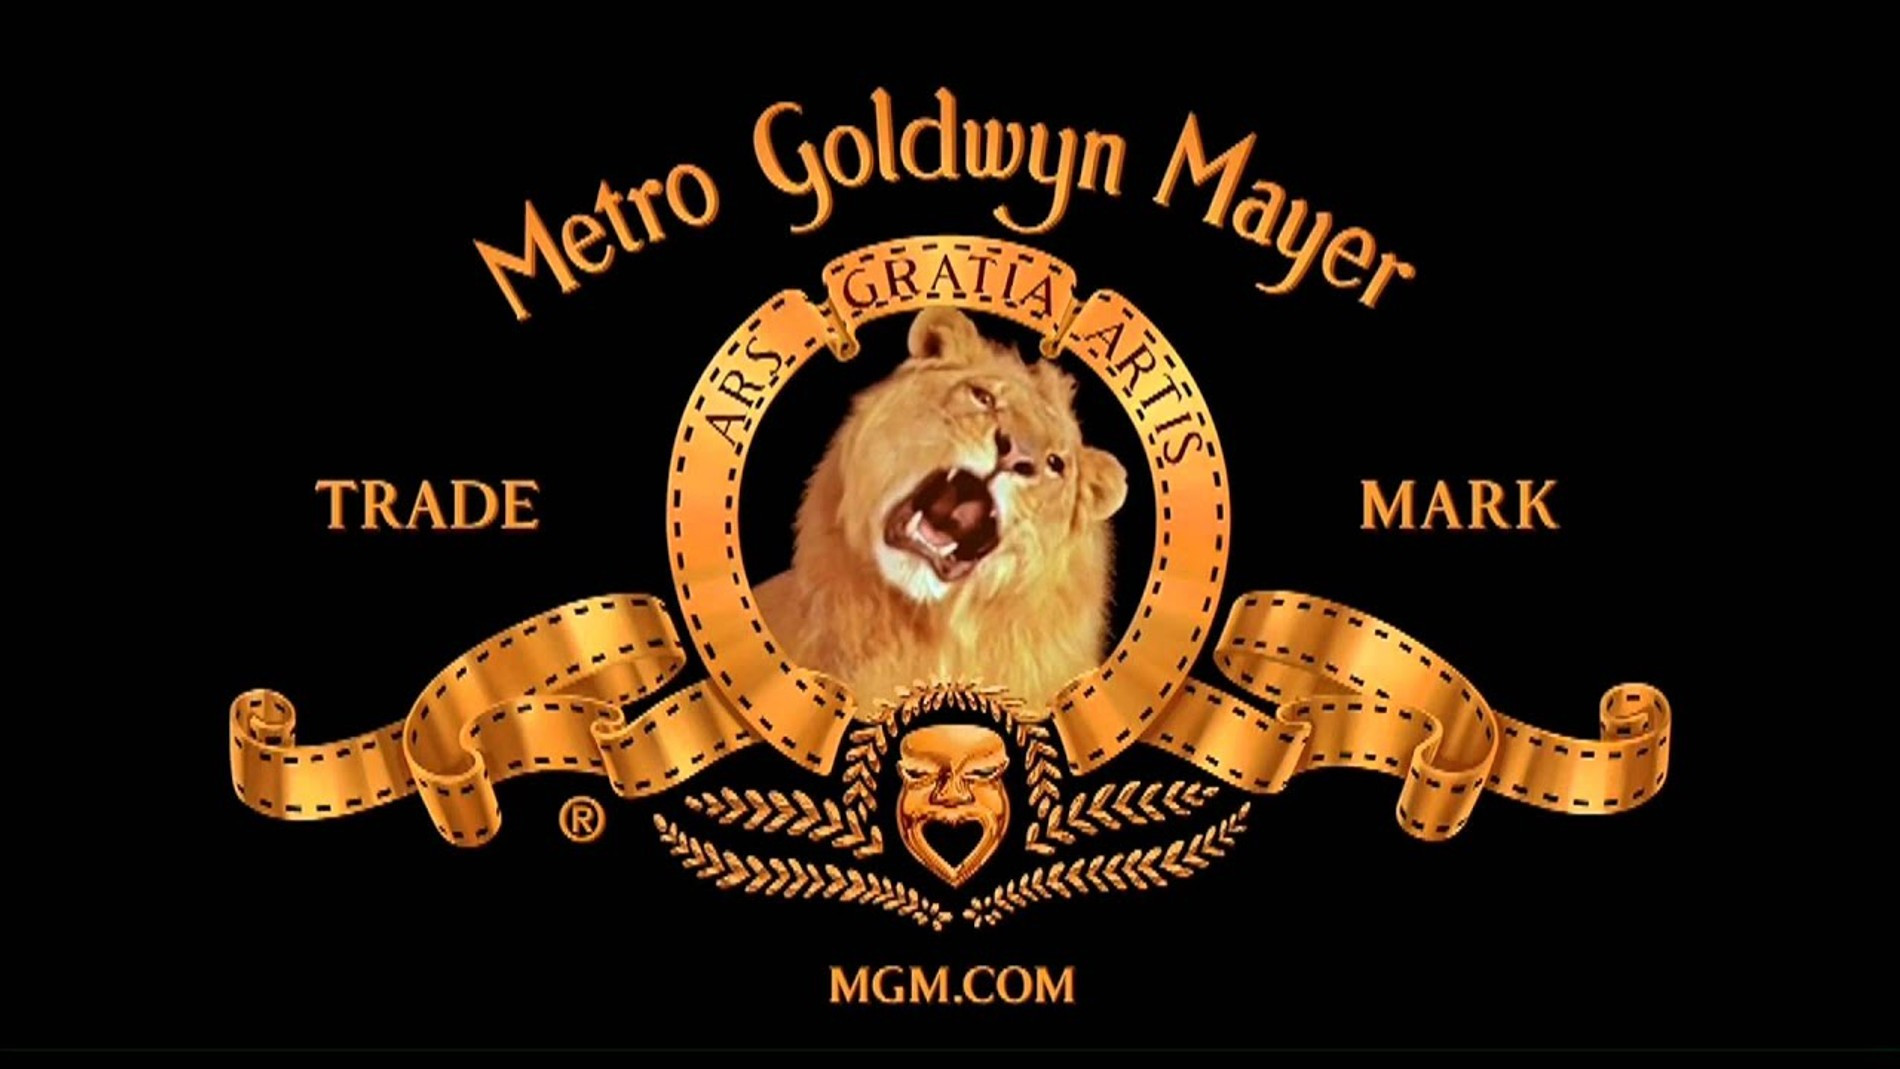 Заставка компании MGM